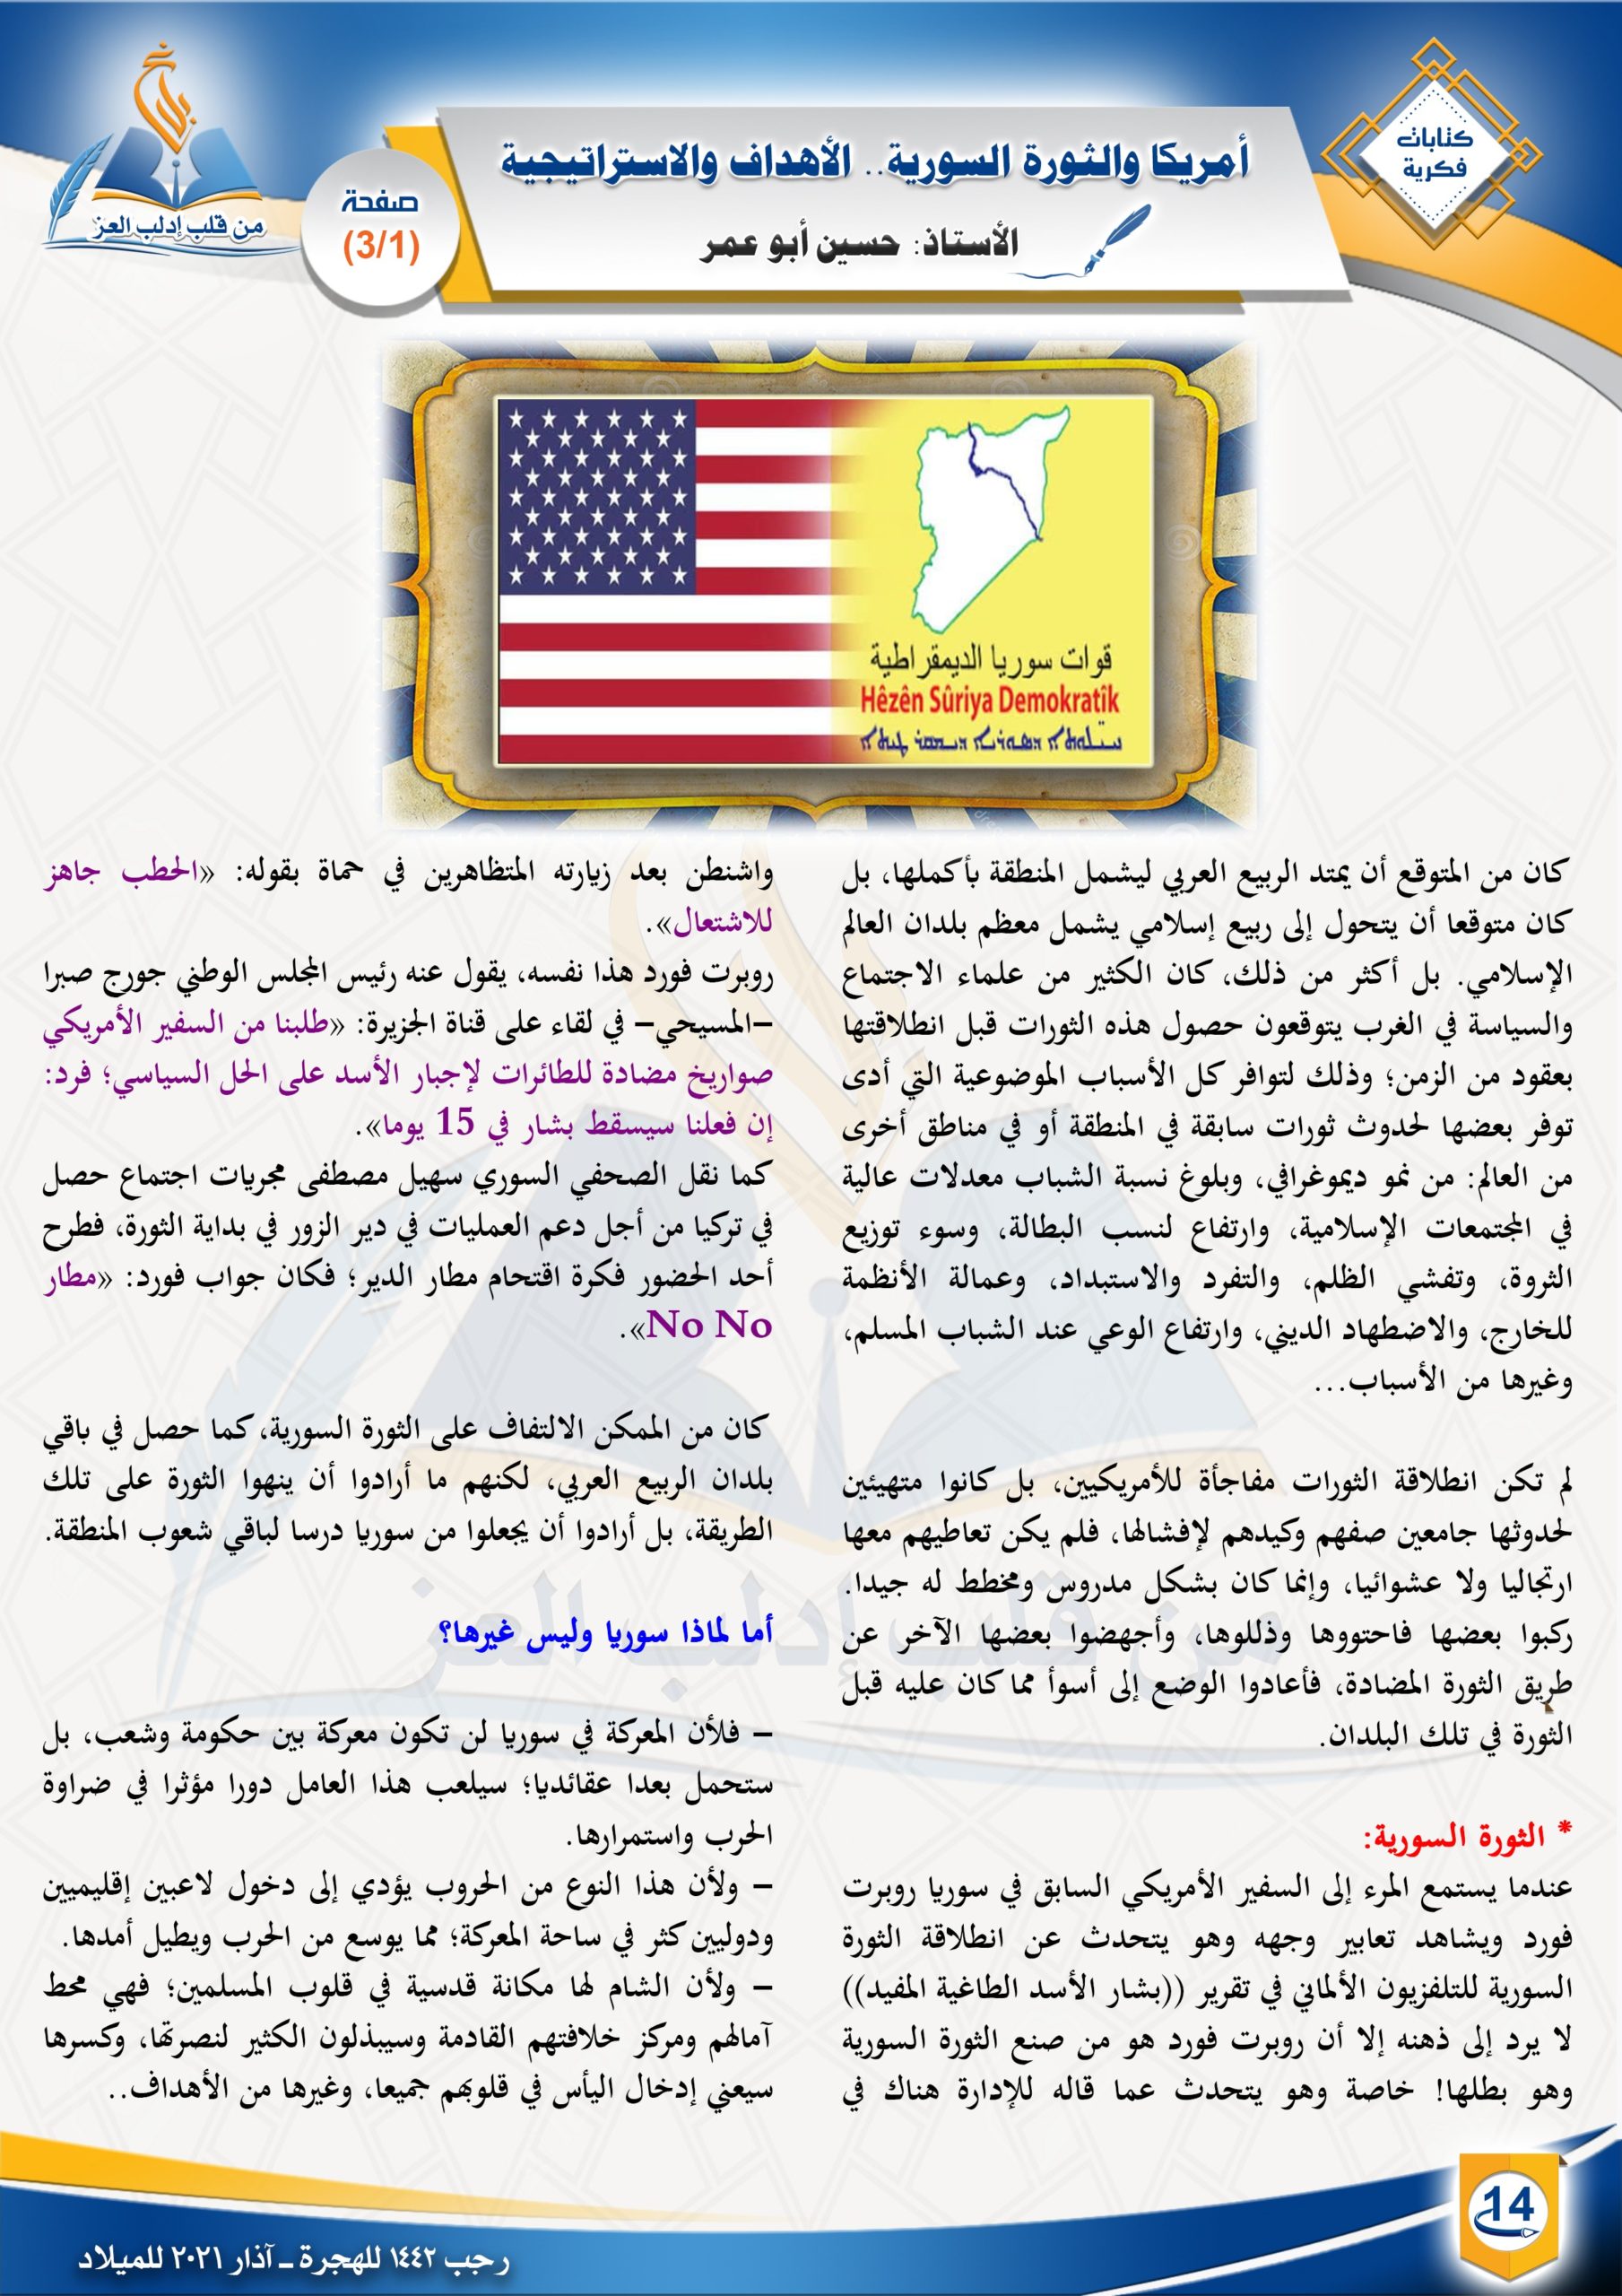 أمريكا والثورة السورية.. الأهداف والاستراتيجية ||كتابات فكرية || مجلة بلاغ العدد ٢١ رجب ١٤٤٢ الأستاذ: حسين أبو عمر